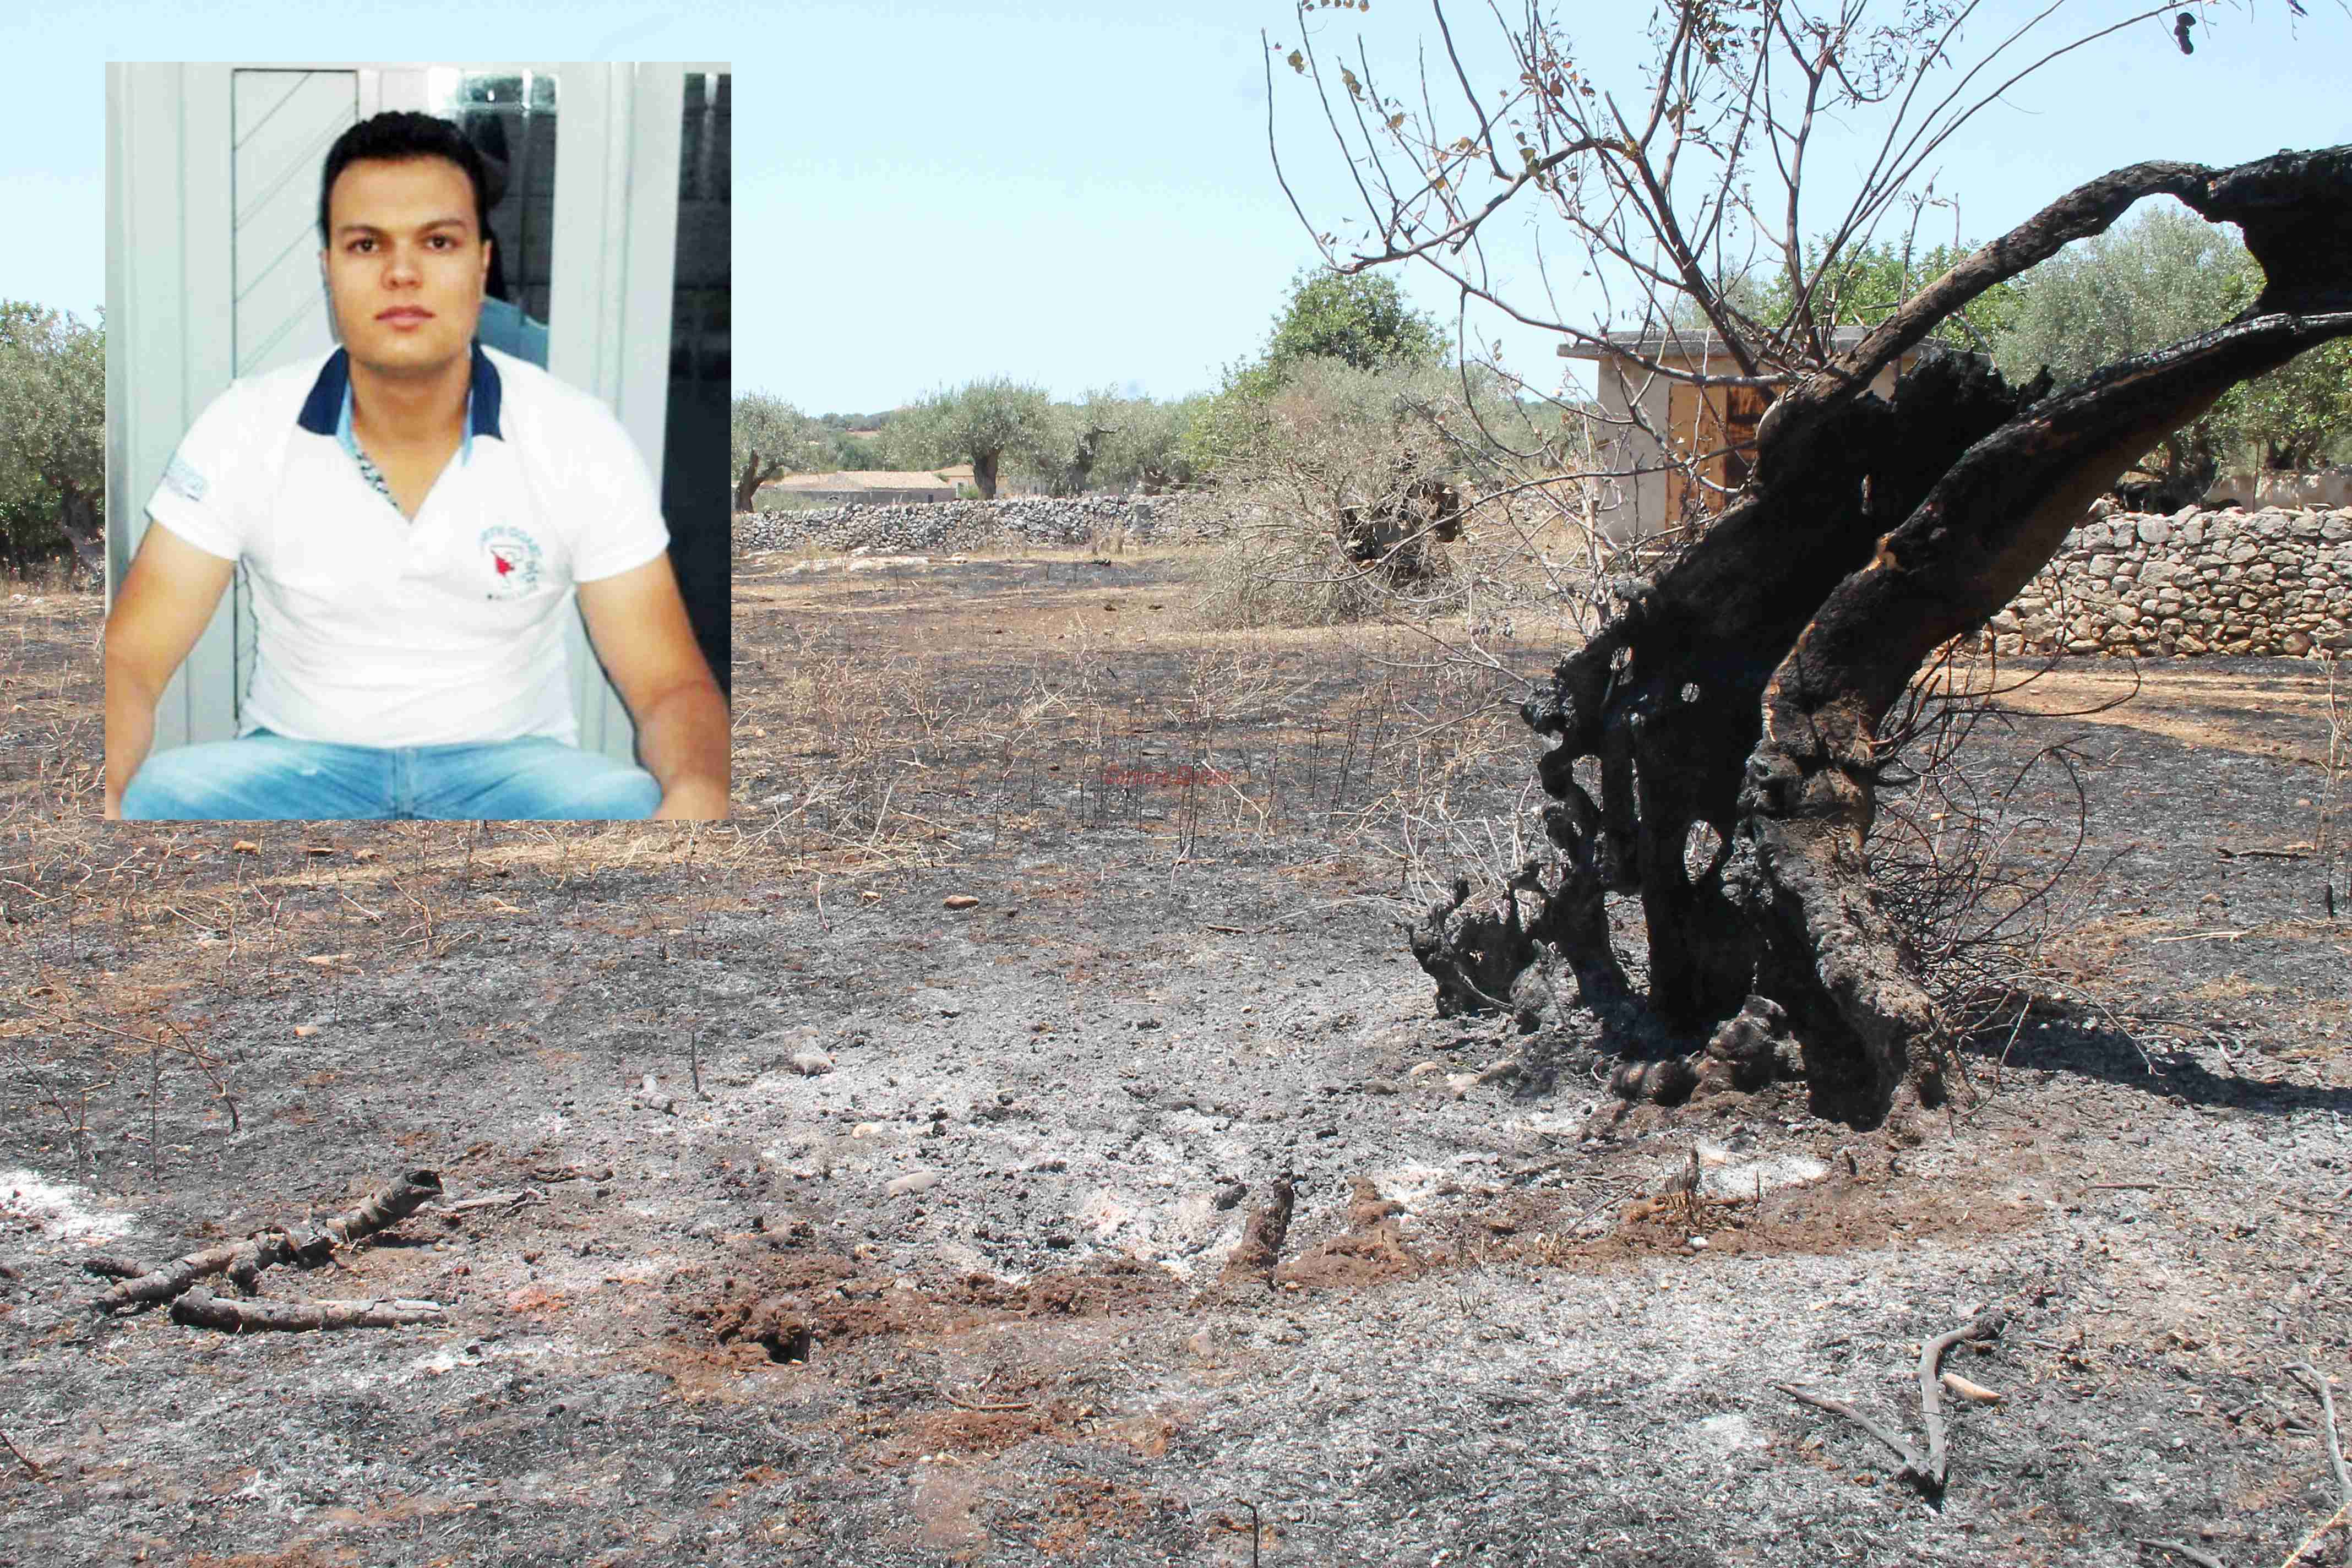 Morte del giovane Matarazzo, trovato un accendino accanto al suo corpo. In un video la zona della tragedia